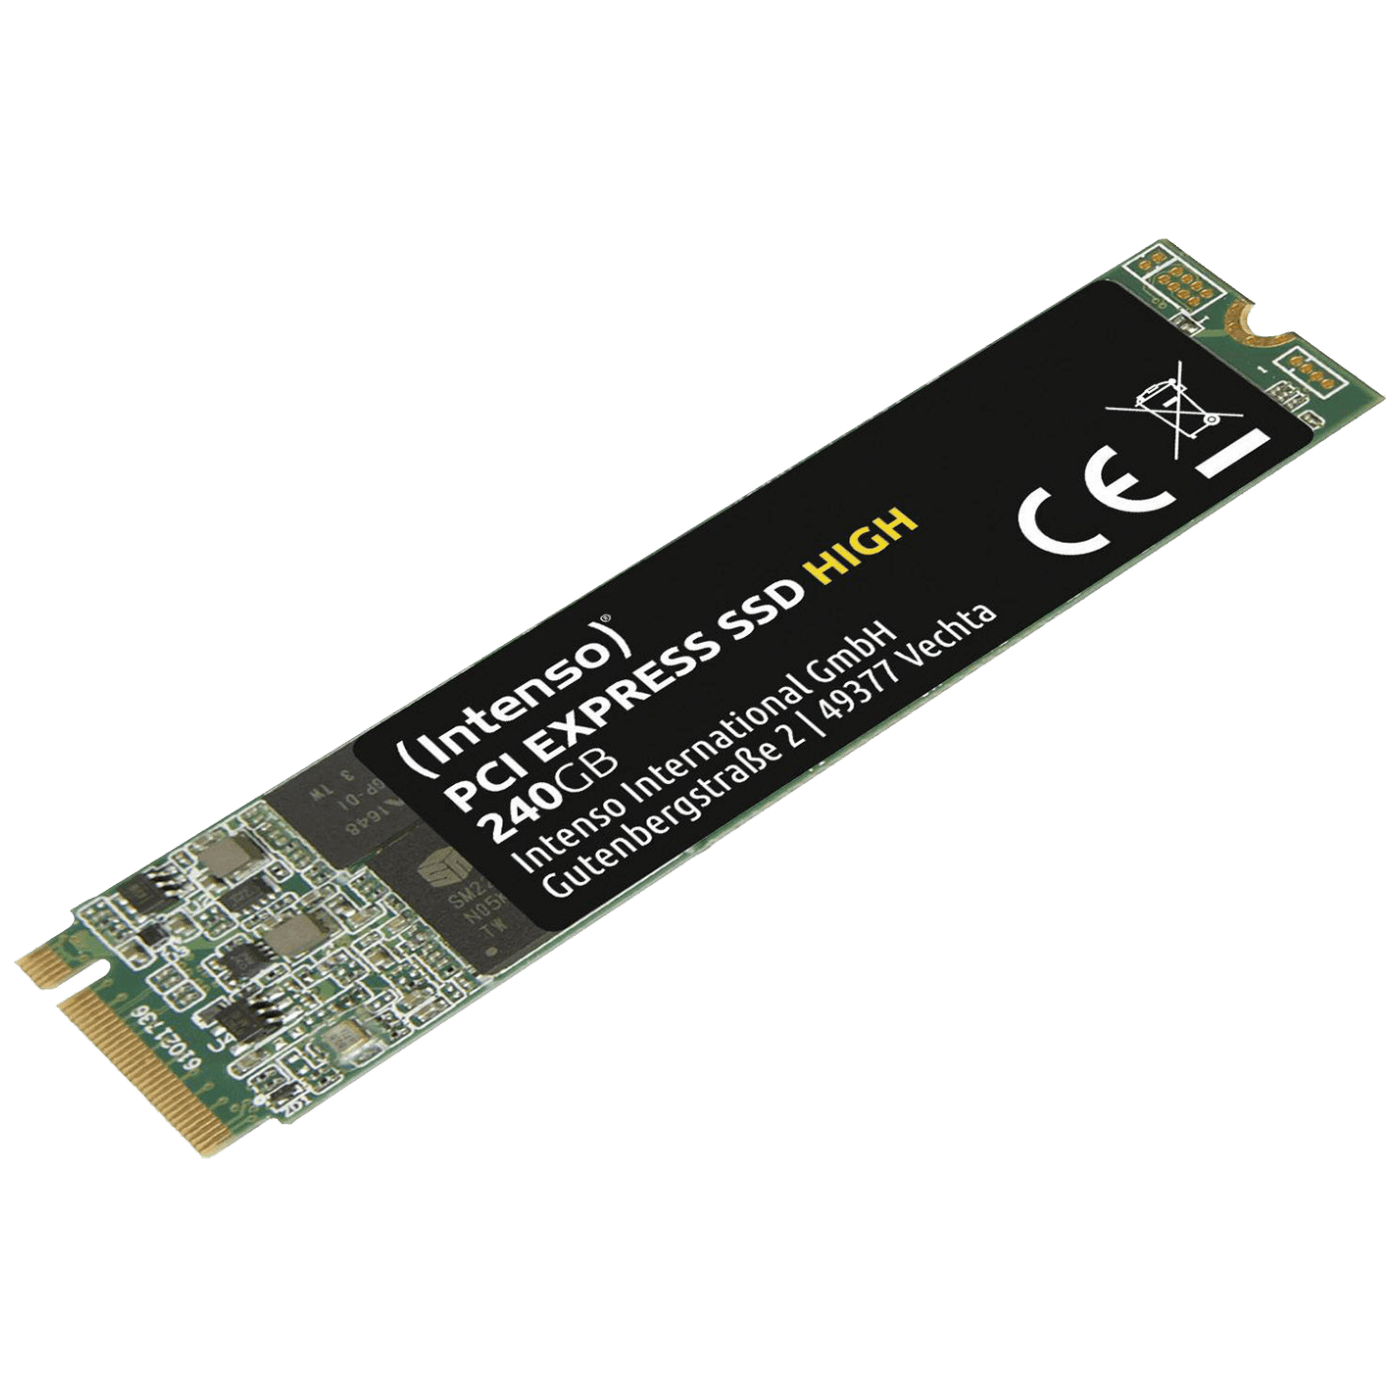 SSD M.2 PCIe 240GB/High